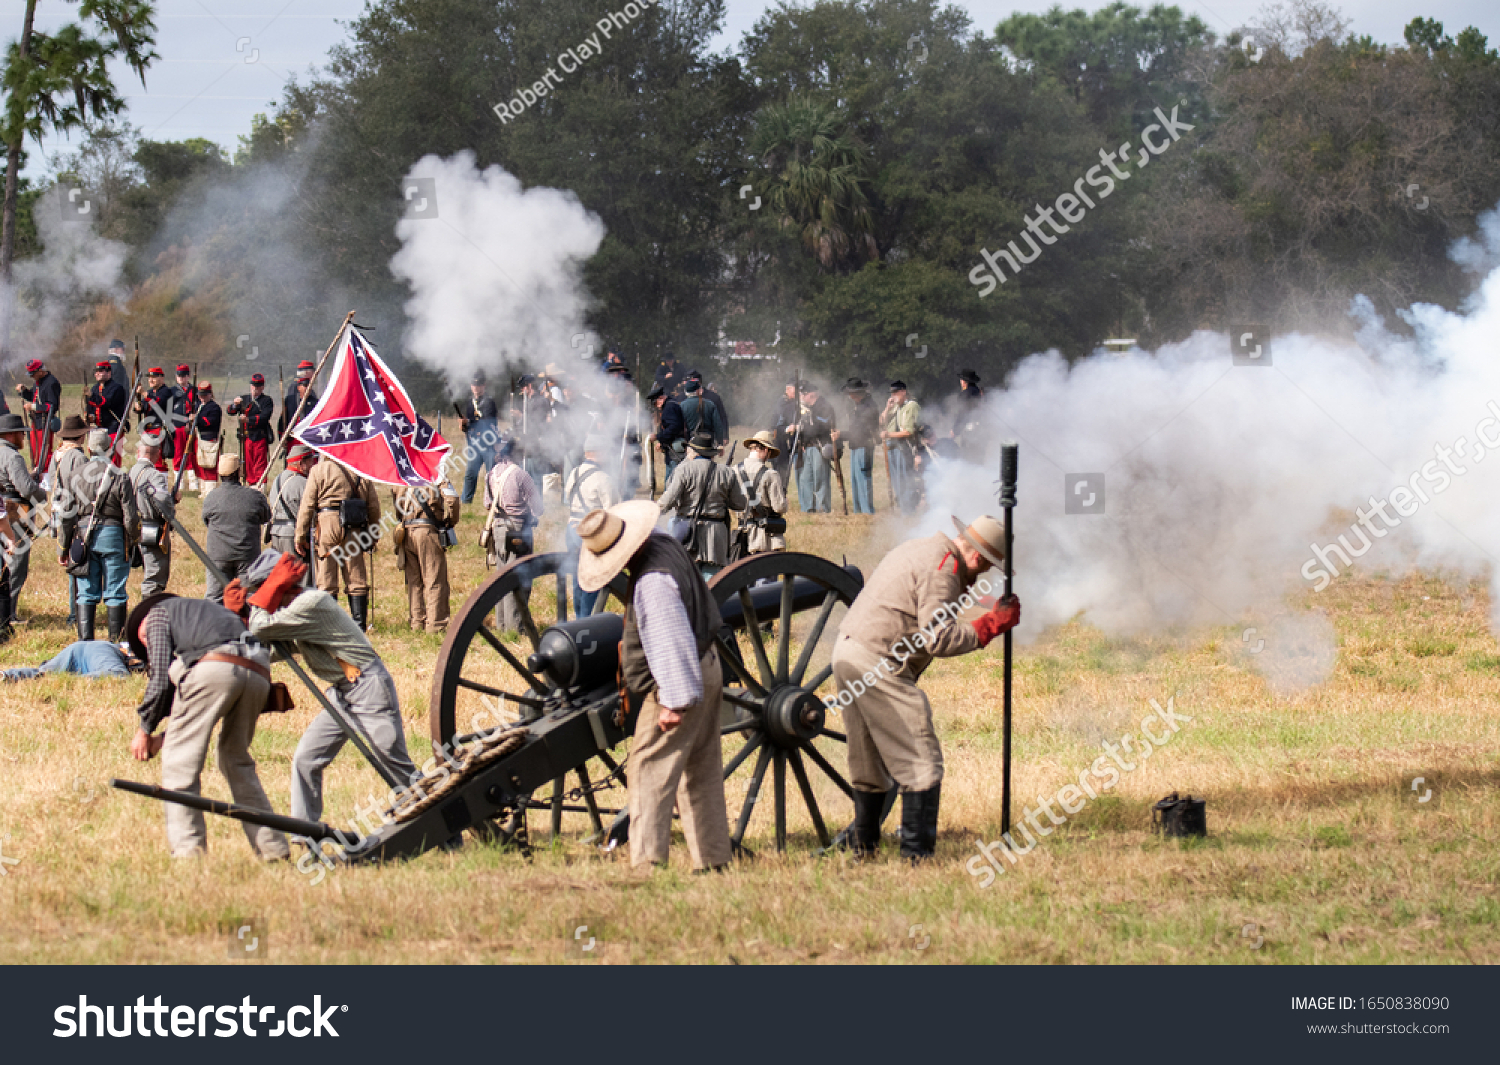 16350 Imágenes De Guerra Civil Americana Imágenes Fotos Y Vectores De Stock Shutterstock 